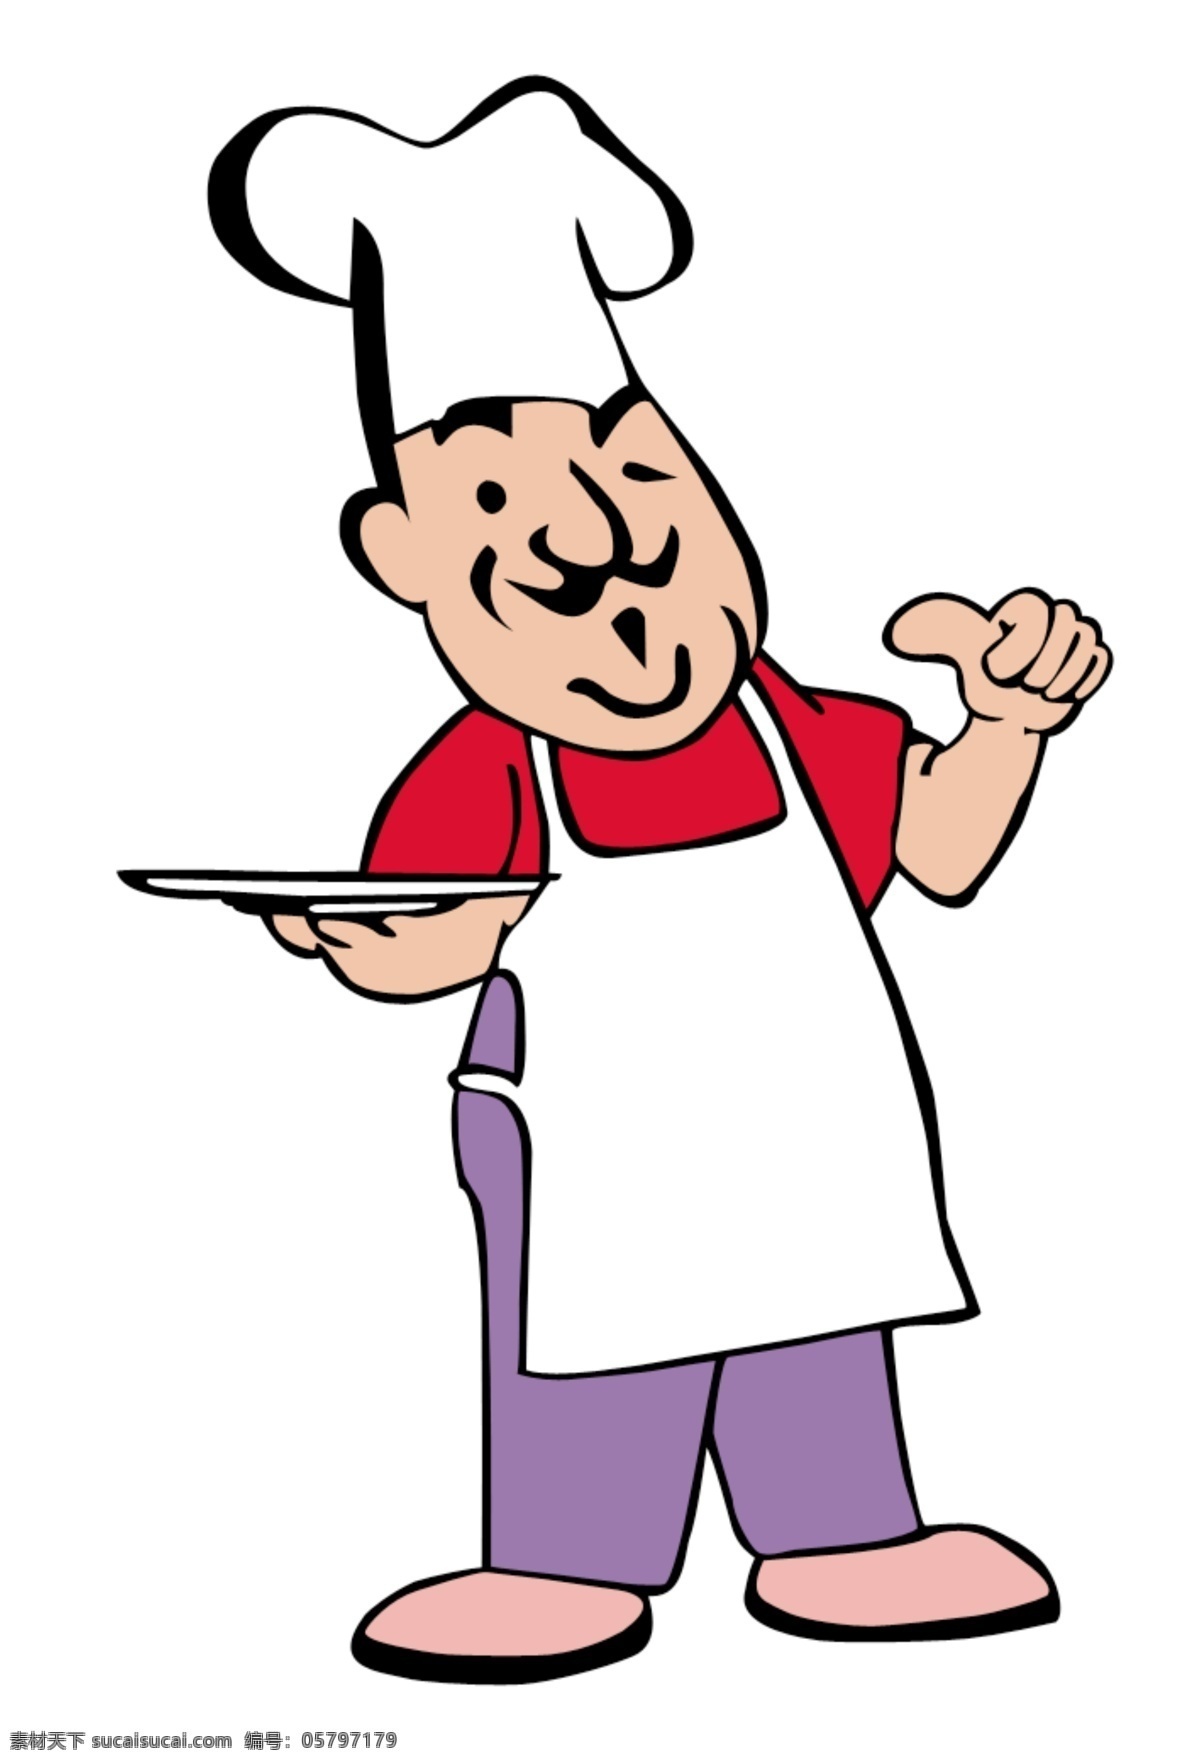 竖 拇指 厨师 卡通 大拇指 动漫 分层 人物 设计素材 托盘 新东方厨师 psd源文件